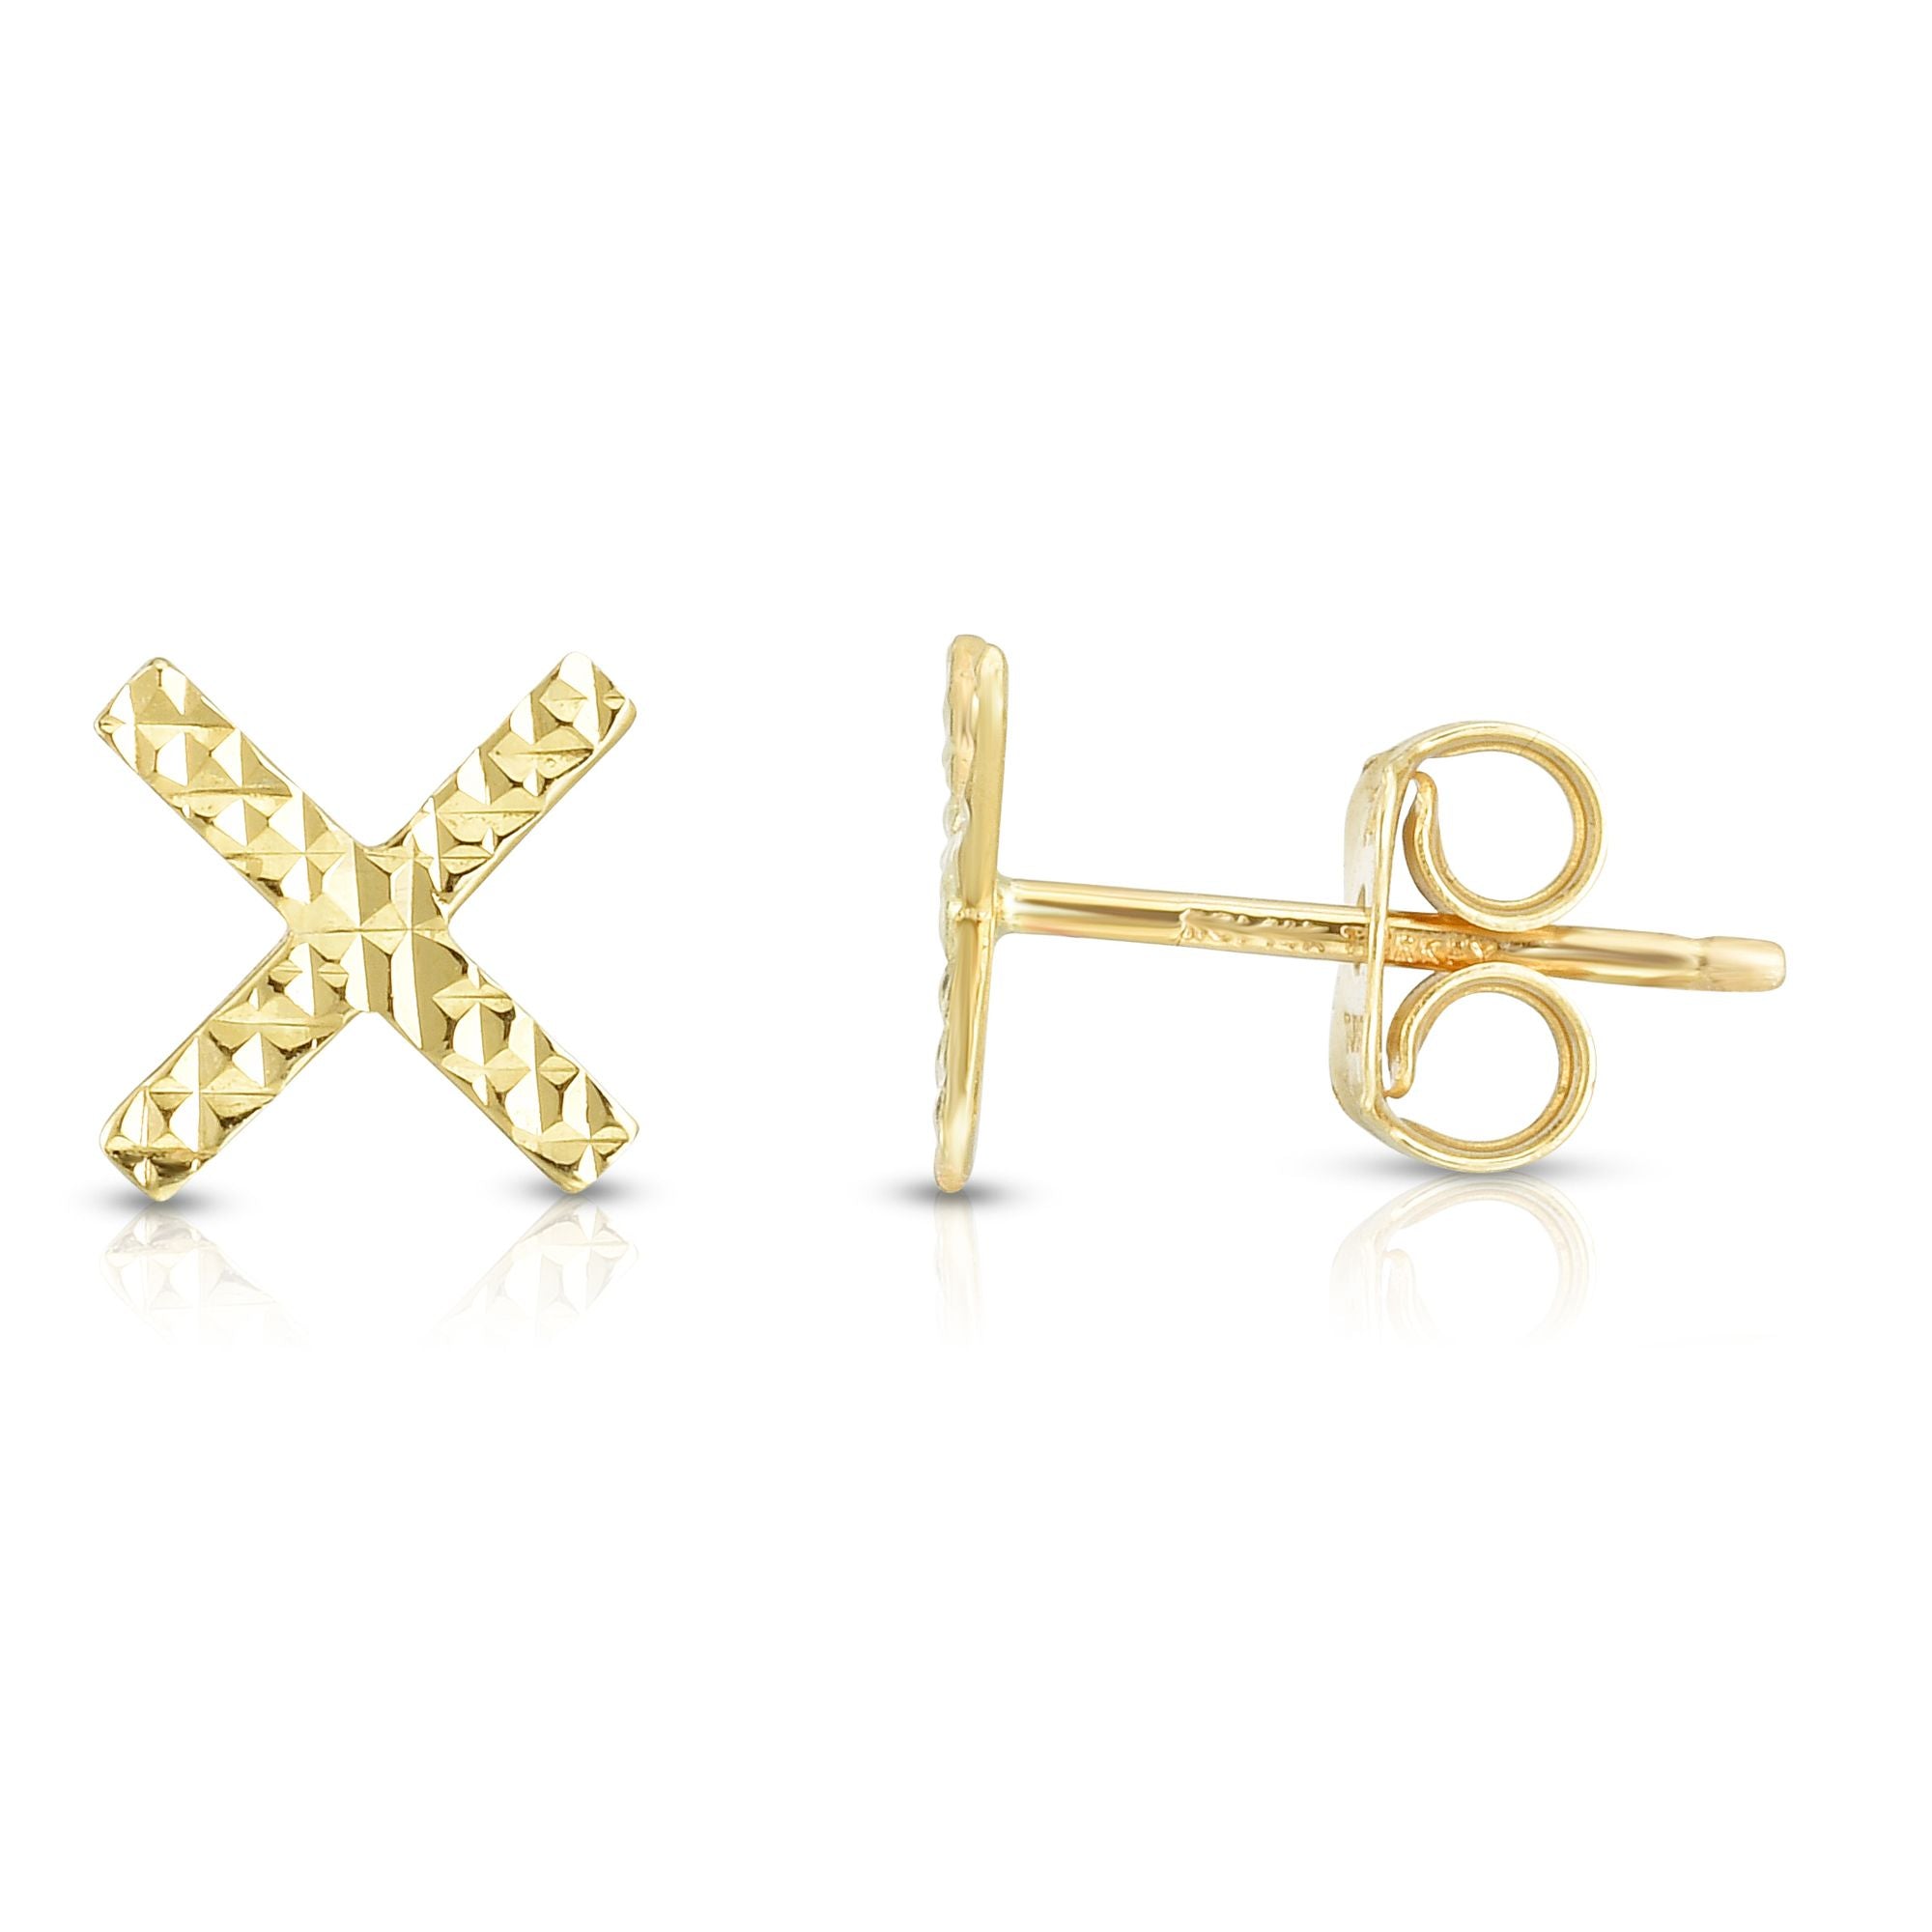 Minimalist Solid Gold Diamond Cut Fancy Post X Earrings with Push Back Earrings - wingroupjewelry